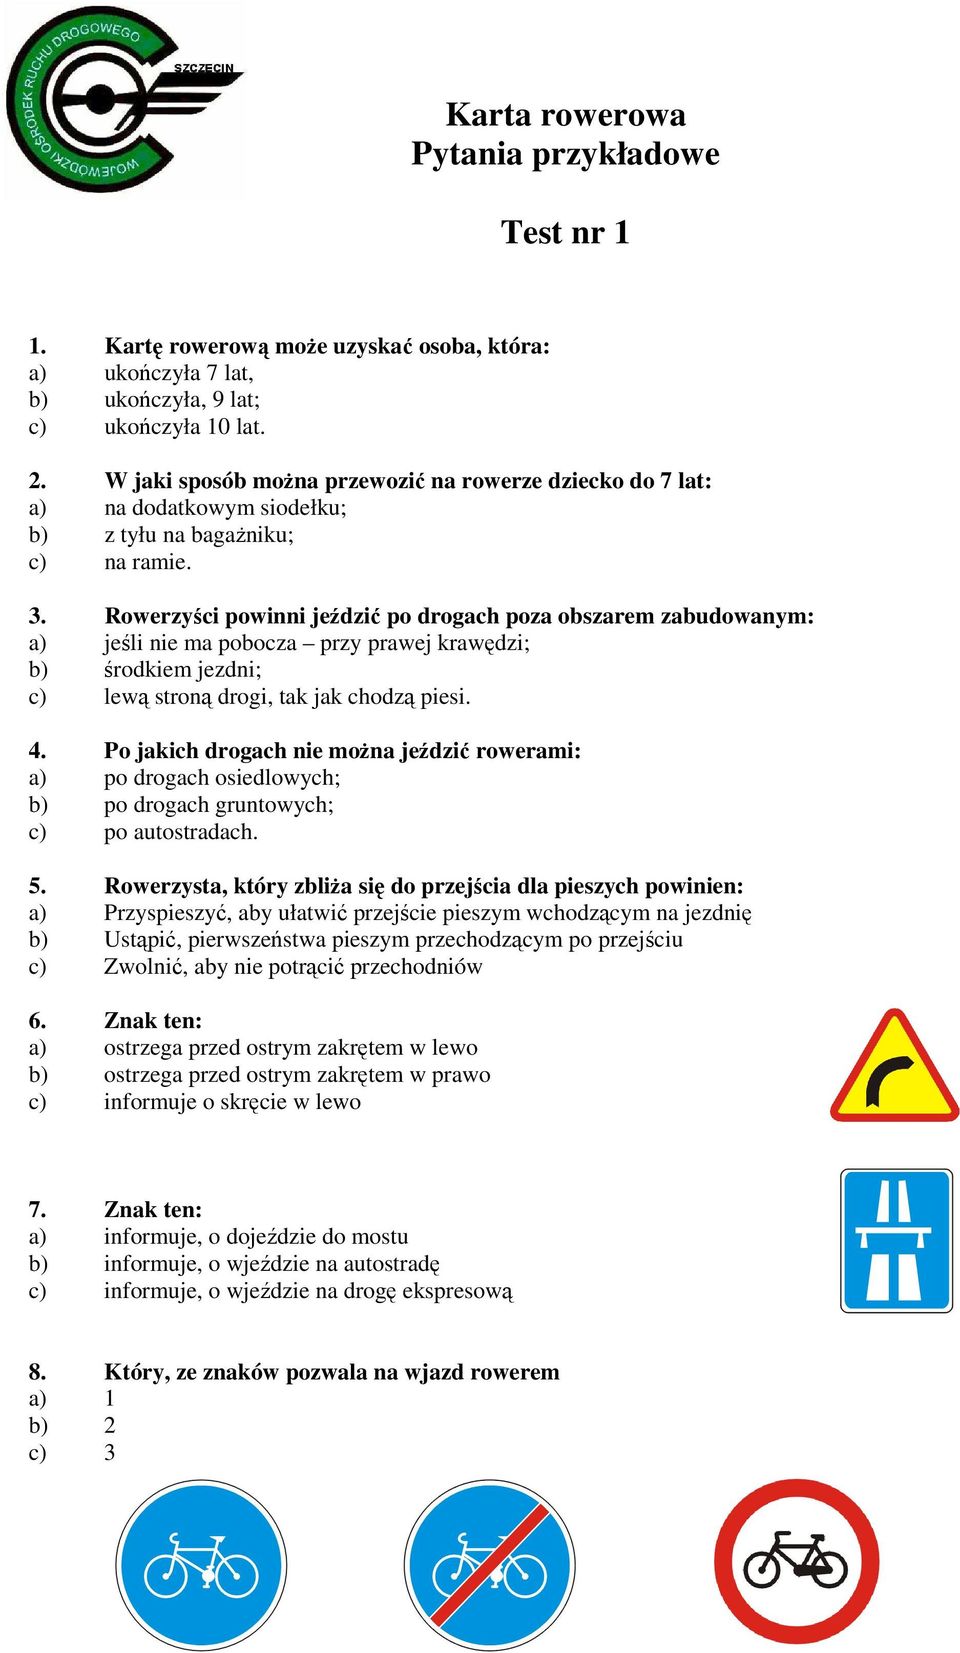 Karta rowerowa Pytania przykładowe. Test nr 1 - PDF Darmowe pobieranie